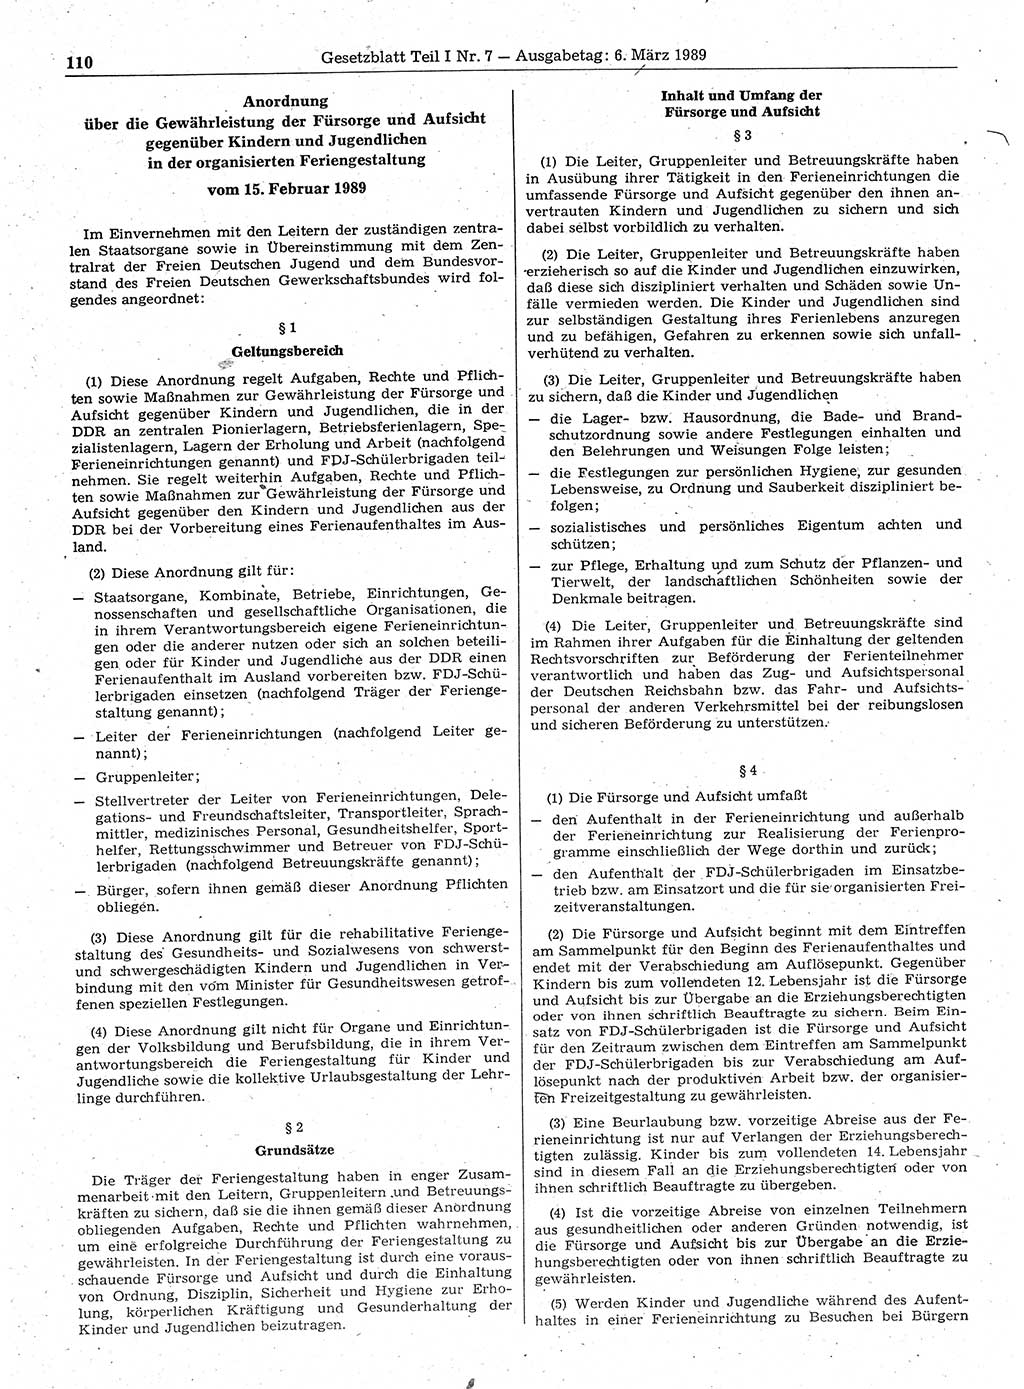 Gesetzblatt (GBl.) der Deutschen Demokratischen Republik (DDR) Teil Ⅰ 1989, Seite 110 (GBl. DDR Ⅰ 1989, S. 110)